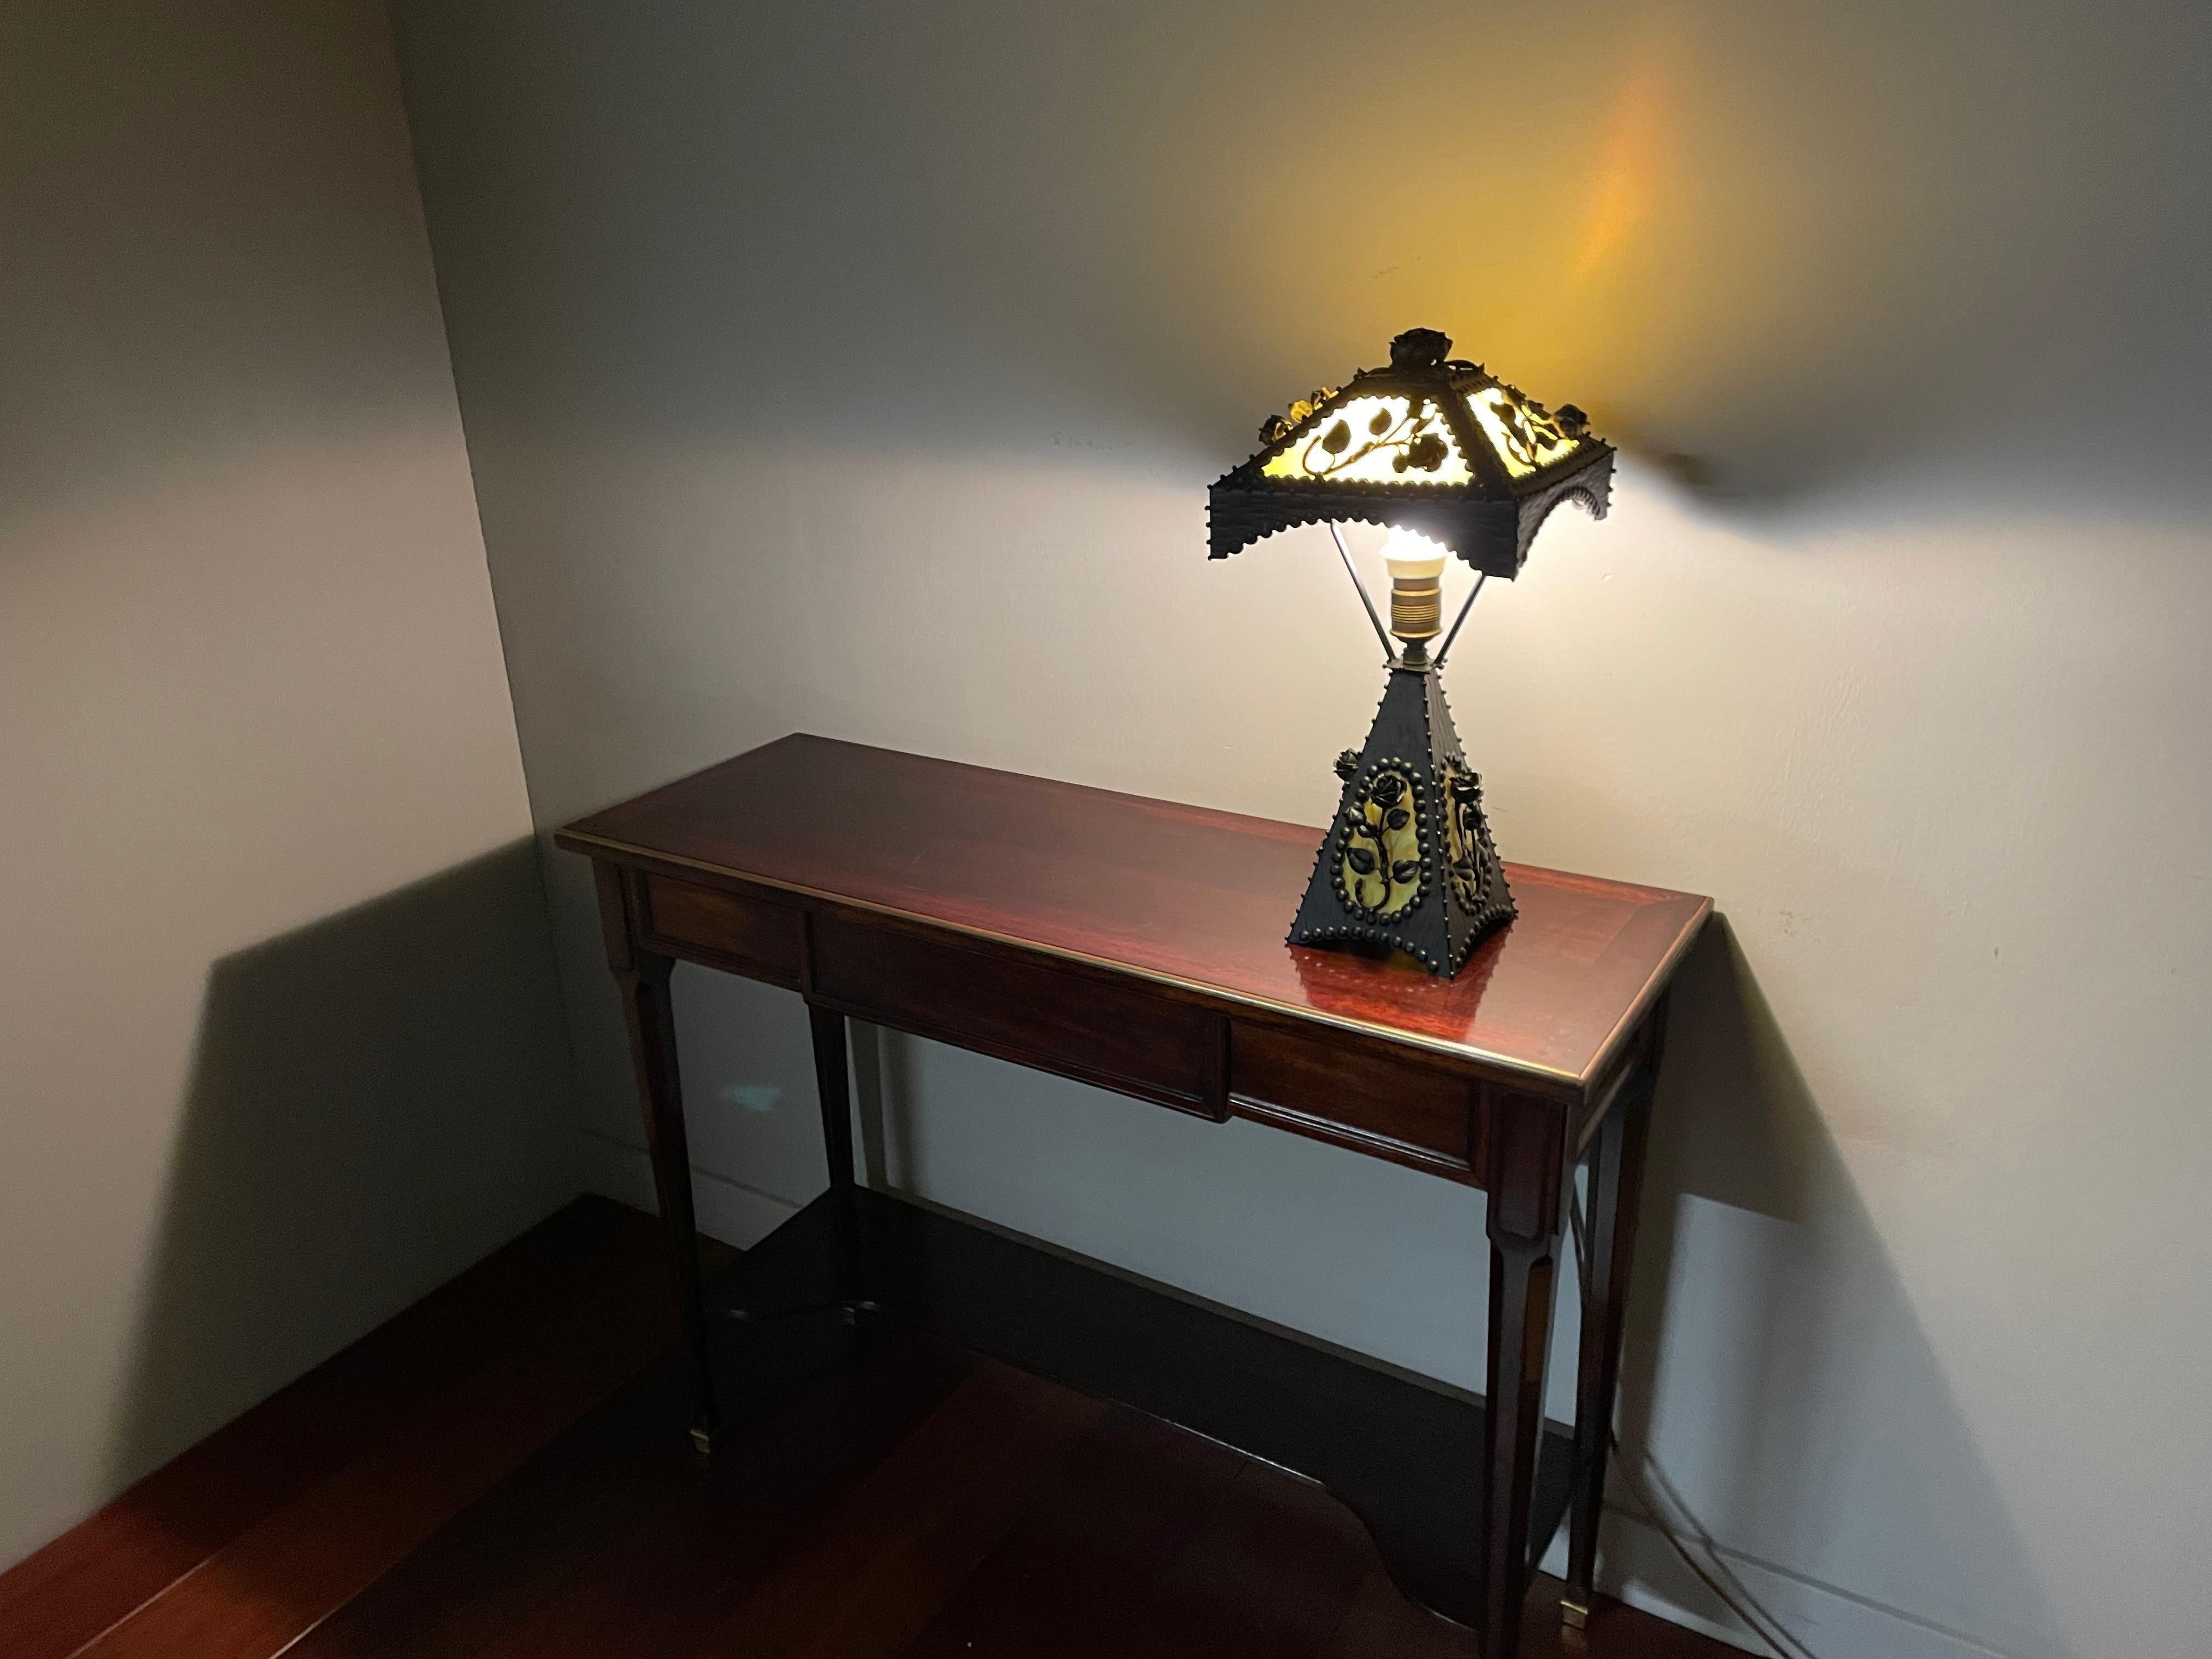 Erstaunliche Qualität und wunderschön stilvolle Tisch- oder Schreibtischlampe im Arts & Crafts-Stil.

Wenn Sie den Arts-and-Crafts-Stil im Allgemeinen und Rosen im Besonderen lieben, dann könnte dies die perfekte Tischlampe für Ihr Zuhause oder